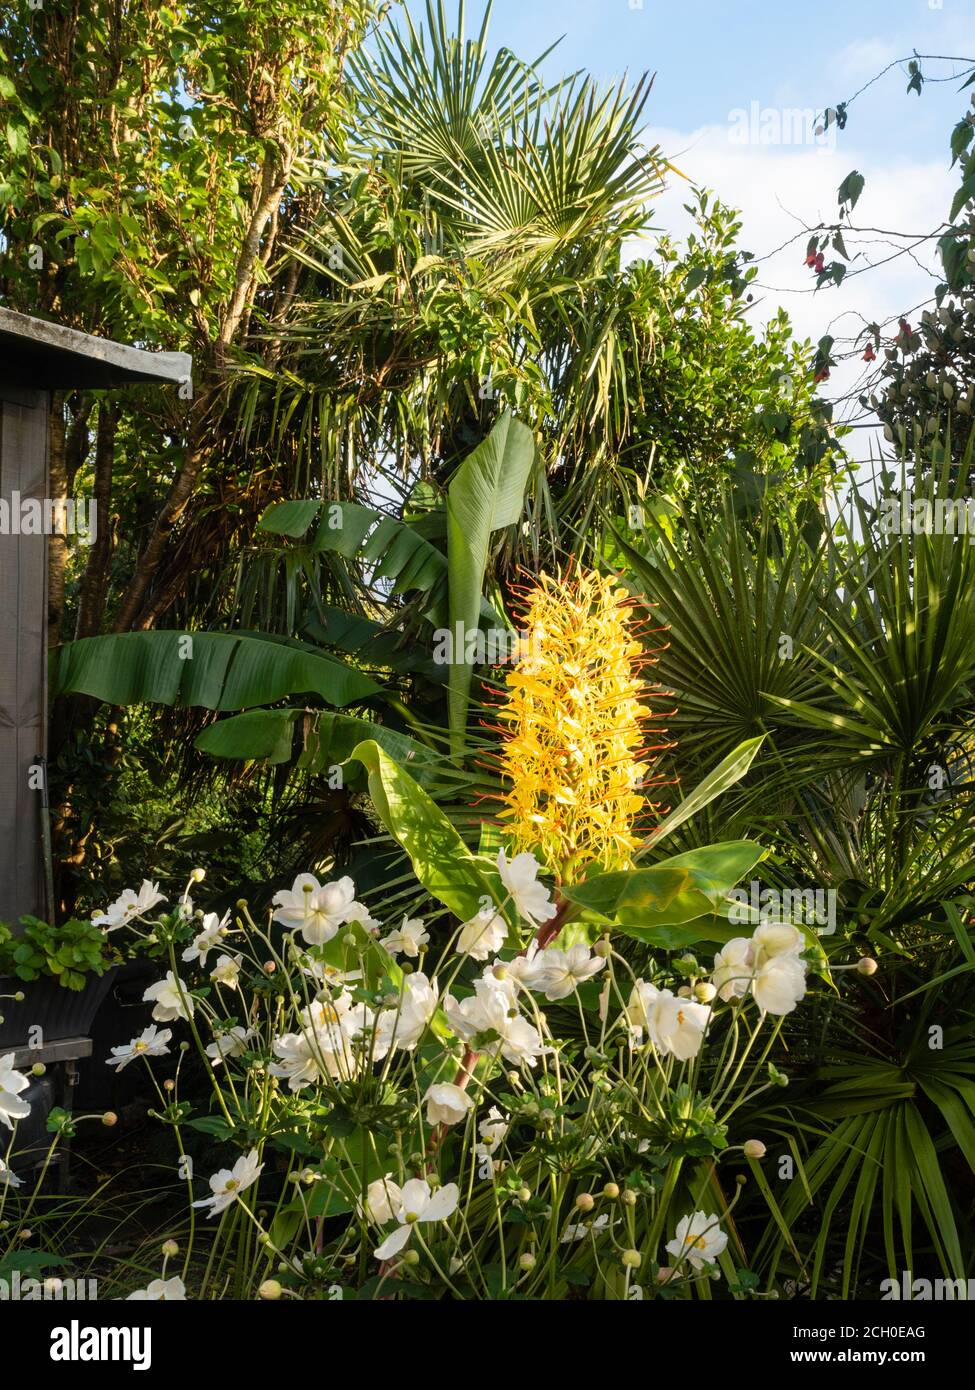 Exotic garden display with Hedychium gardnerianum, Chamaerops humilis, Anemone x hybrida 'Honorine Jobert' and Musa basjoo Stock Photo